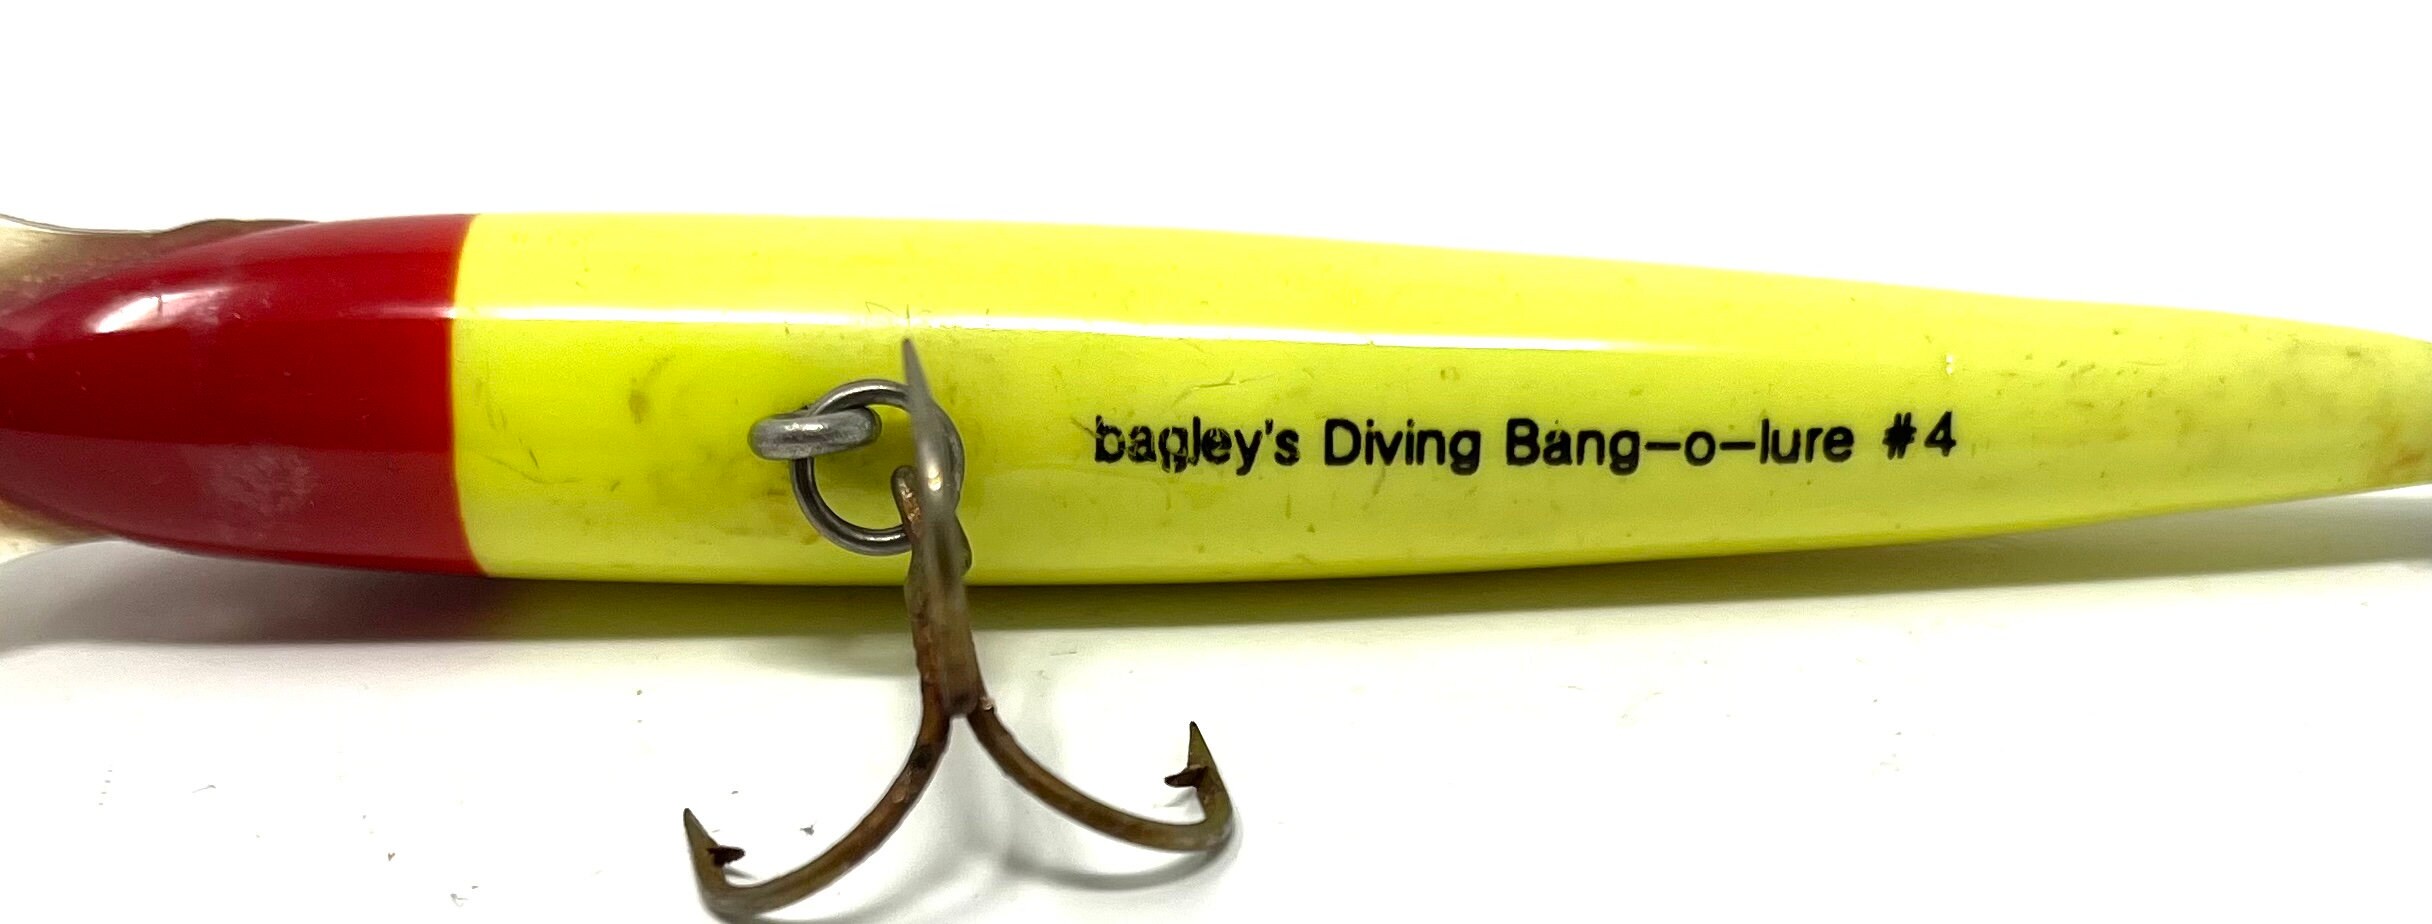 Vintage Bagleys Diving Bang-o-lure No 4 Fishing Lure / Antique Fishing Lure  Bagleys Diving Bang-o-lure 